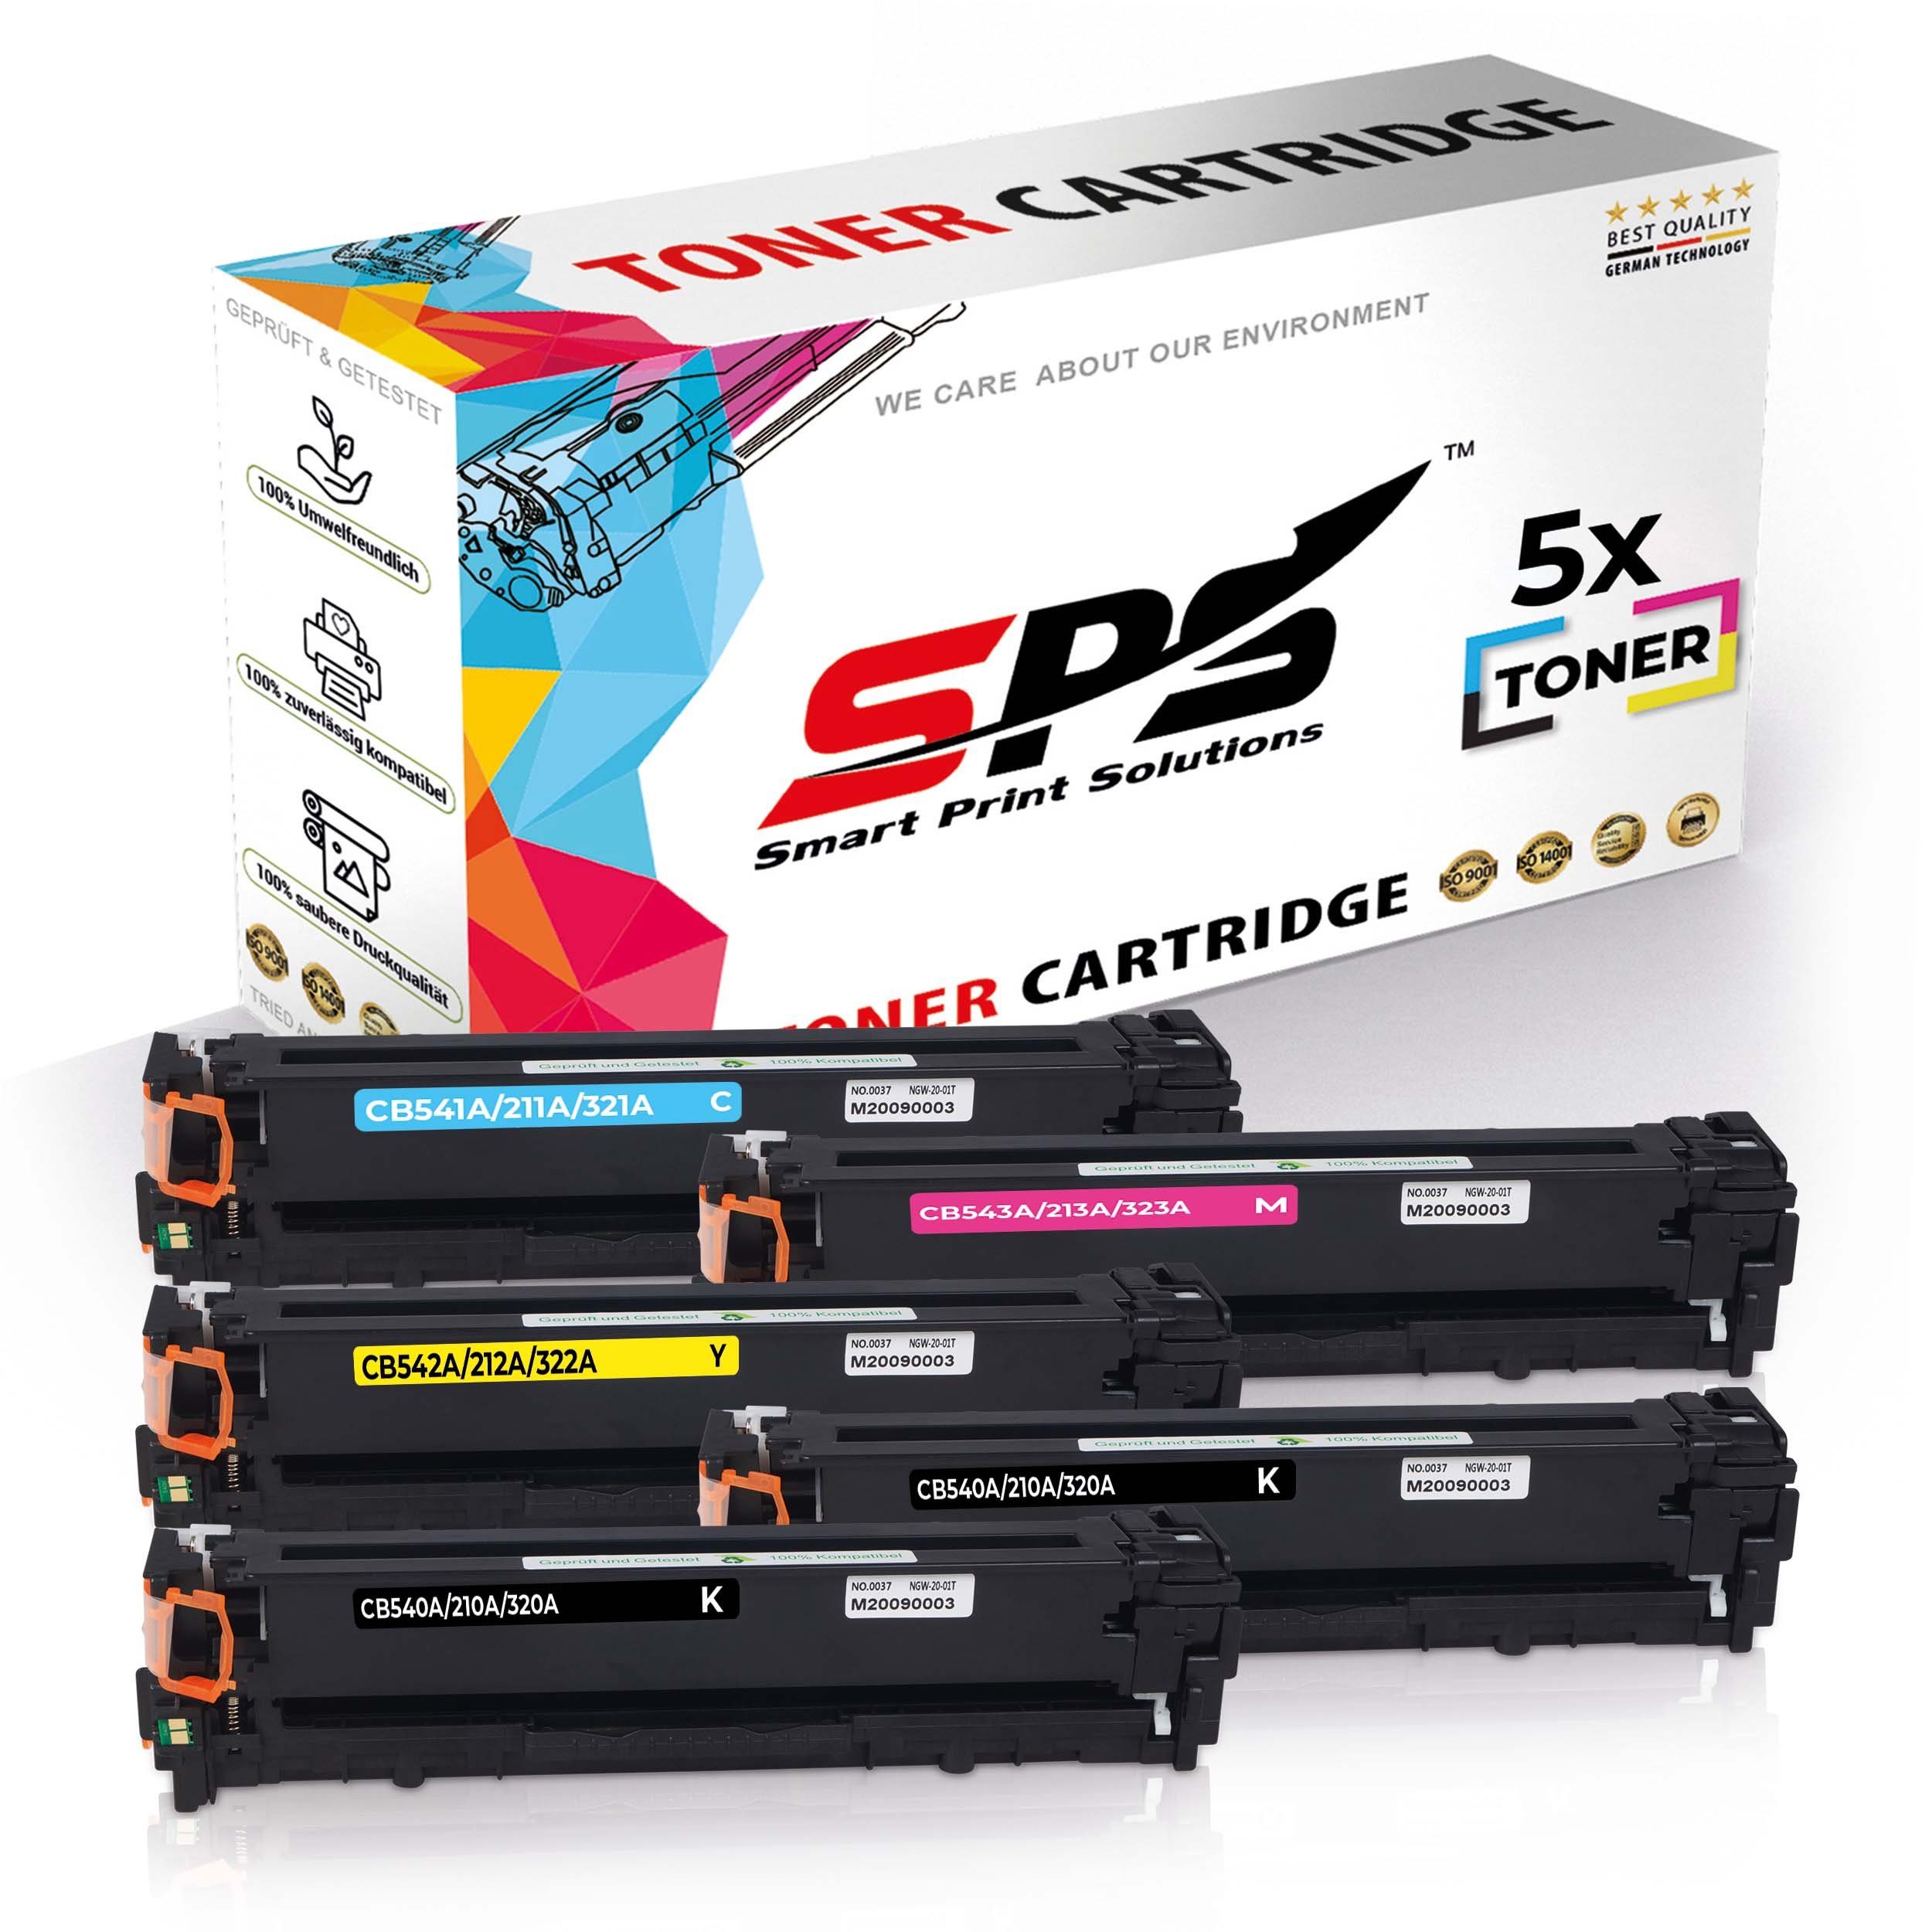 SPS Tonerkartusche 5x Multipack Set Kompatibel für HP Color Laserjet CP 1518 (125A/CB541A, (5er Pack)